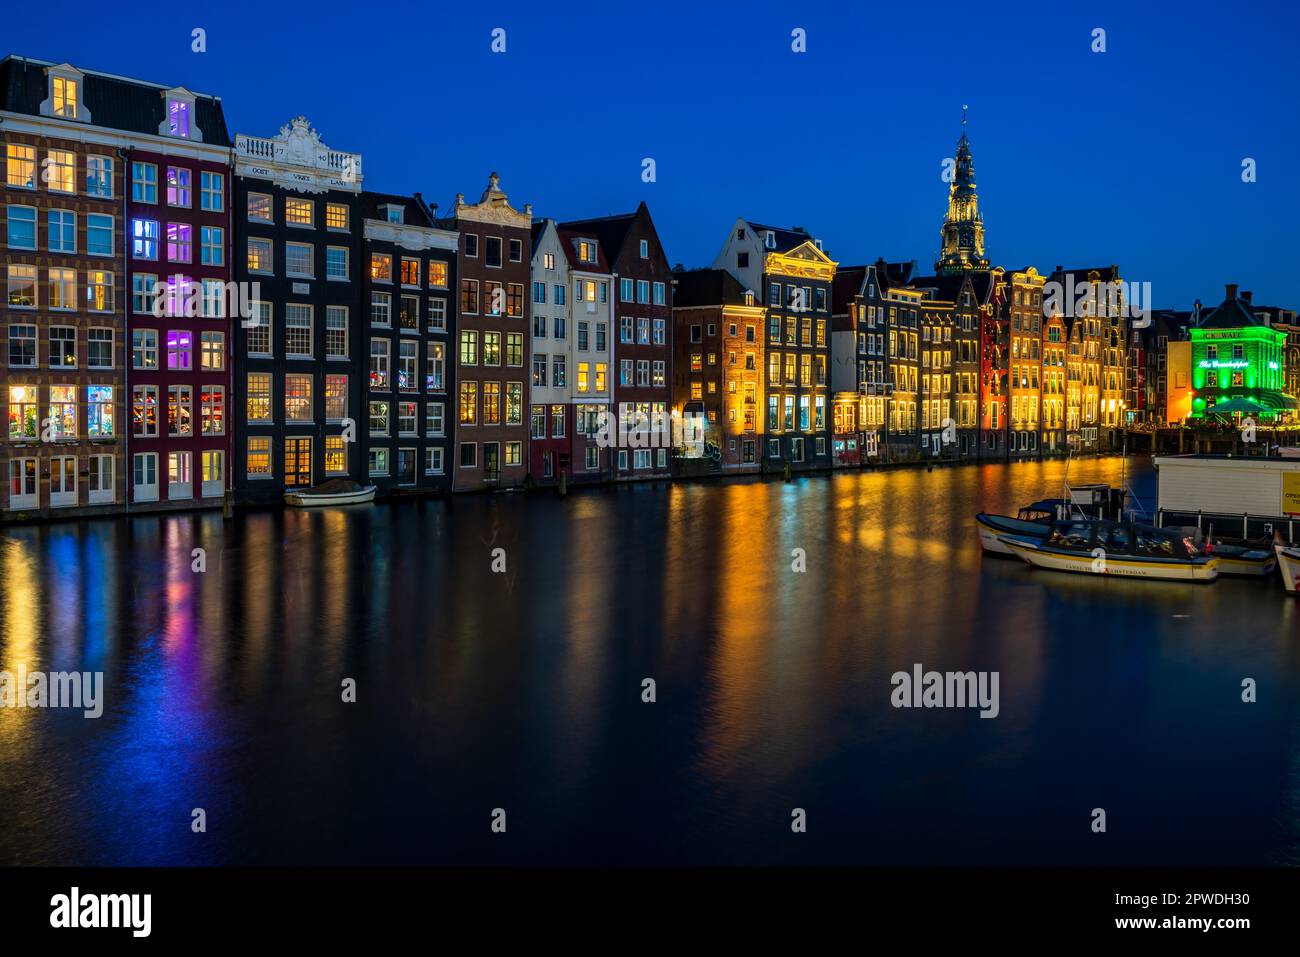 AMSTERDAM, HOLLAND - 18. APRIL 2023: Typische holländische Häuser säumen einen Kanal in der niederländischen Hauptstadt, bekannt für sein künstlerisches Erbe, ein ausgeklügeltes Kanalsystem Stockfoto